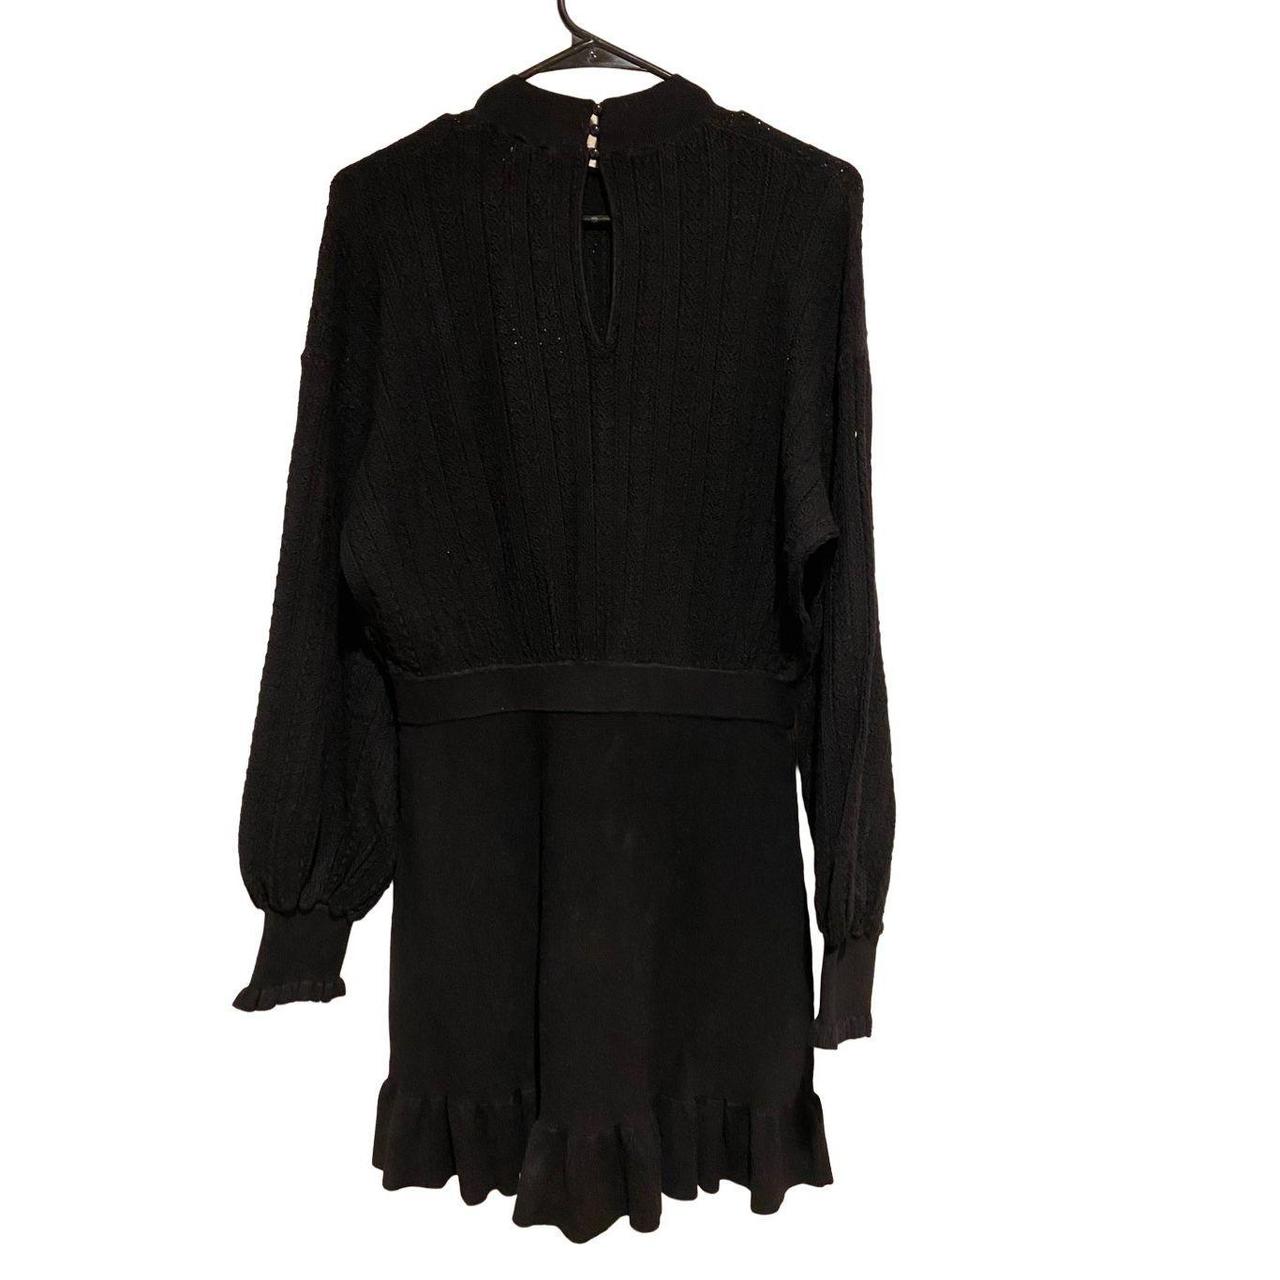 Sezane Carlie Dress in Noir (black) NWT- has a... - Depop